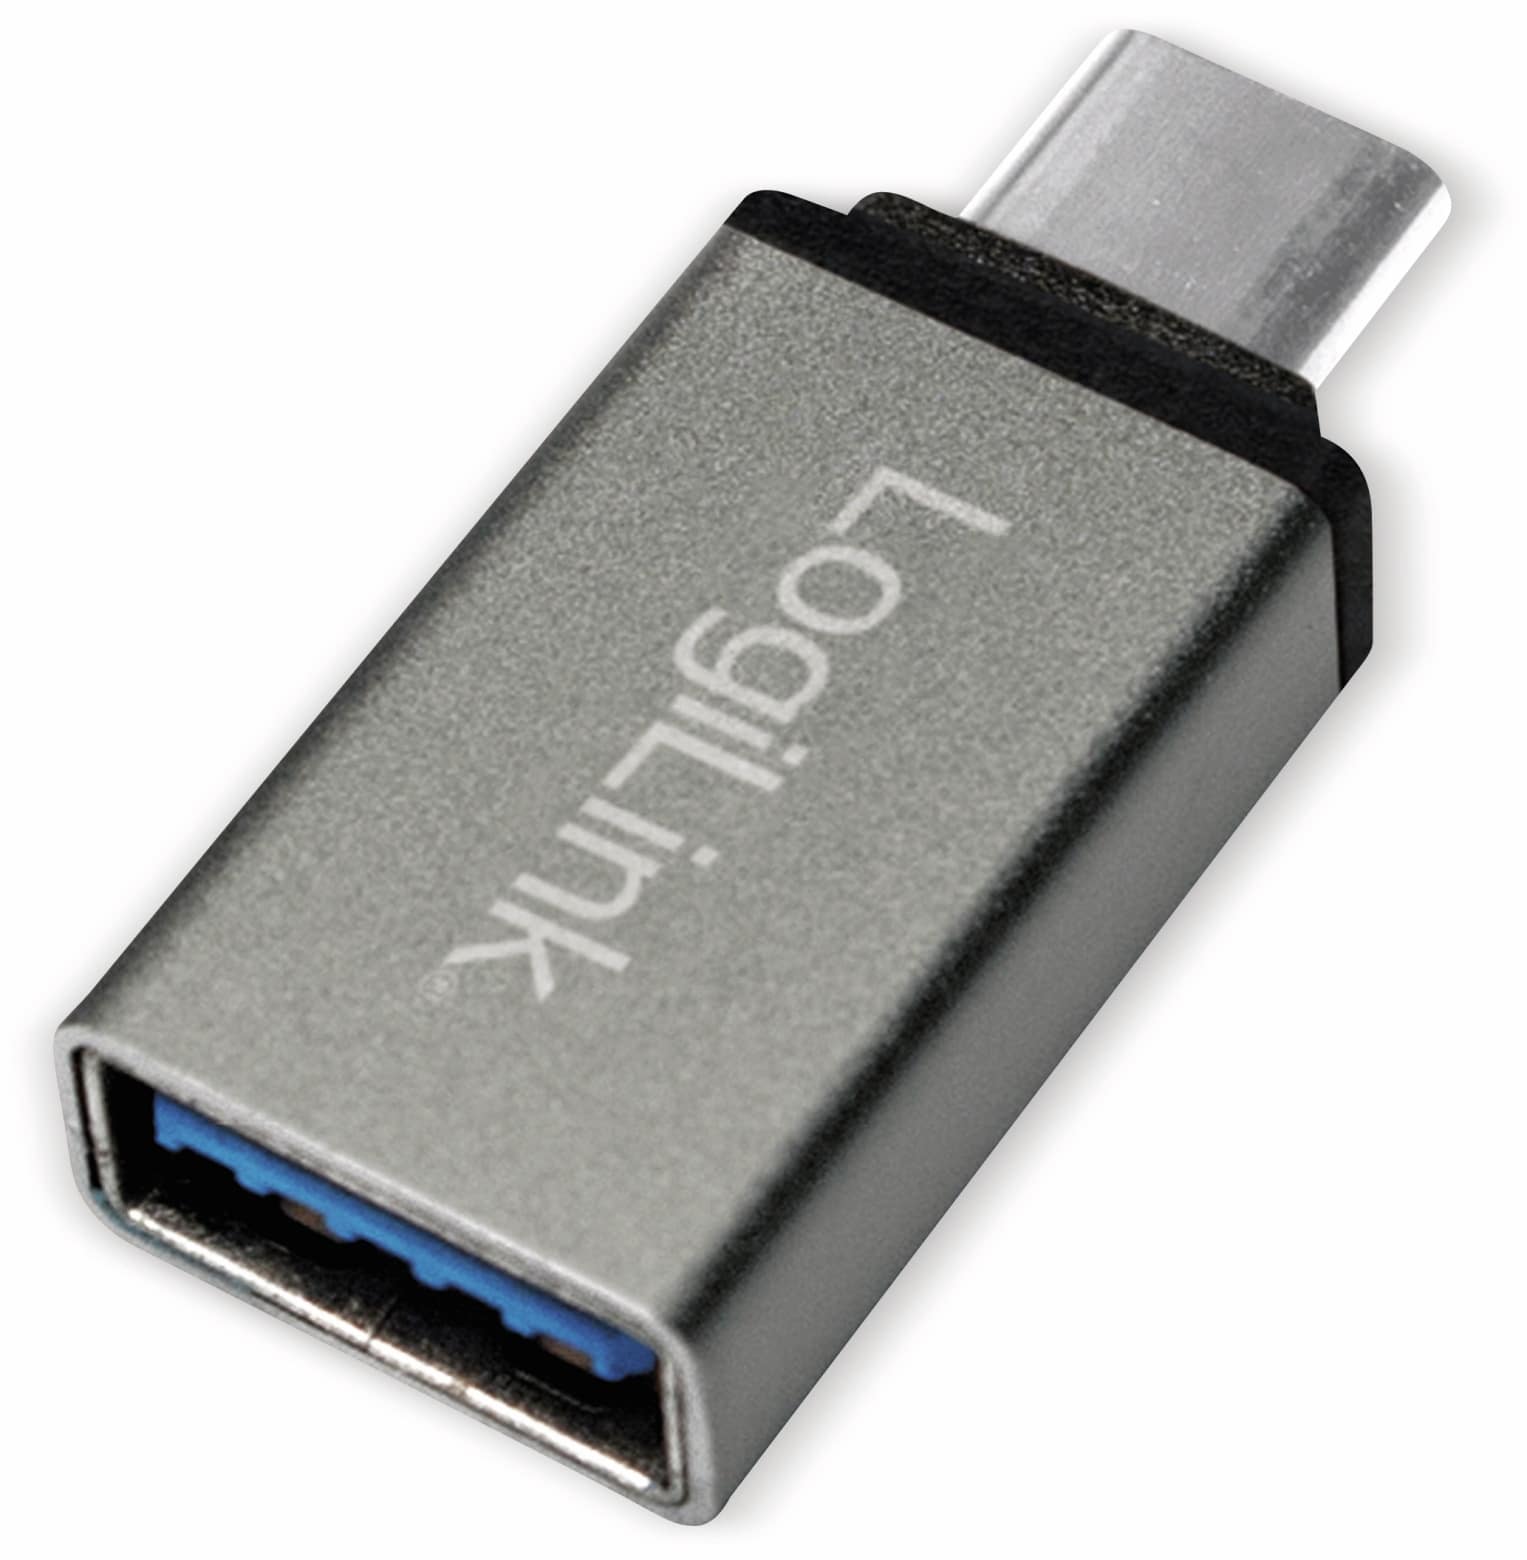 LOGILINK USB-Adapter AU0042, USB-C Stecker auf USB-A 3.0 Kupplung